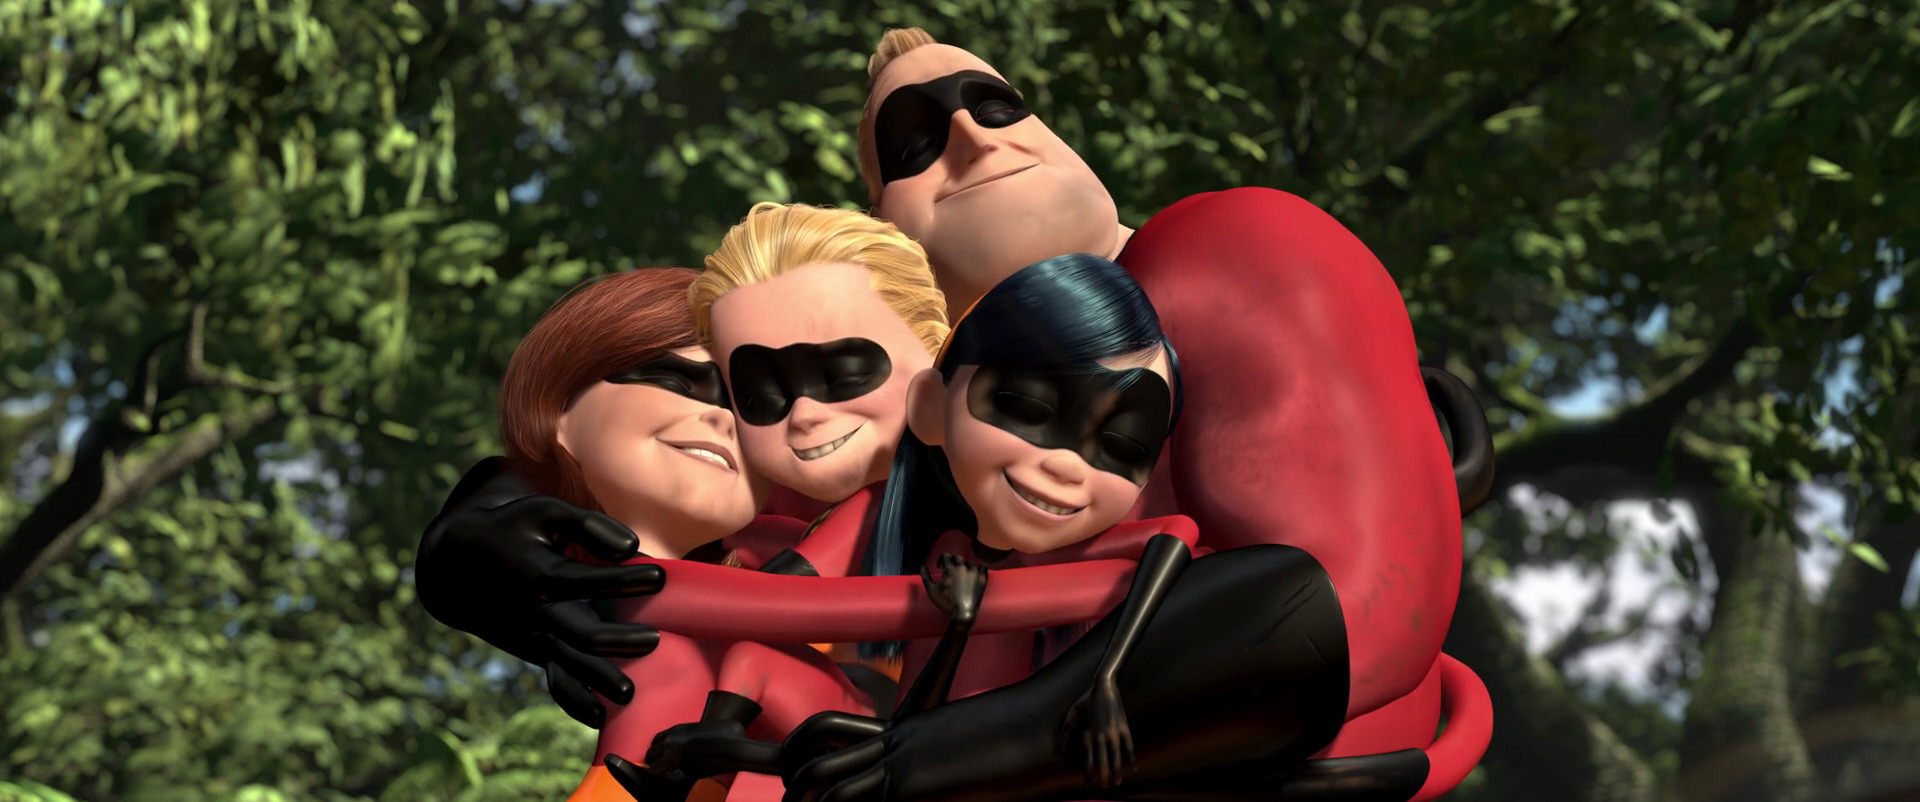 The Incredibles - hug